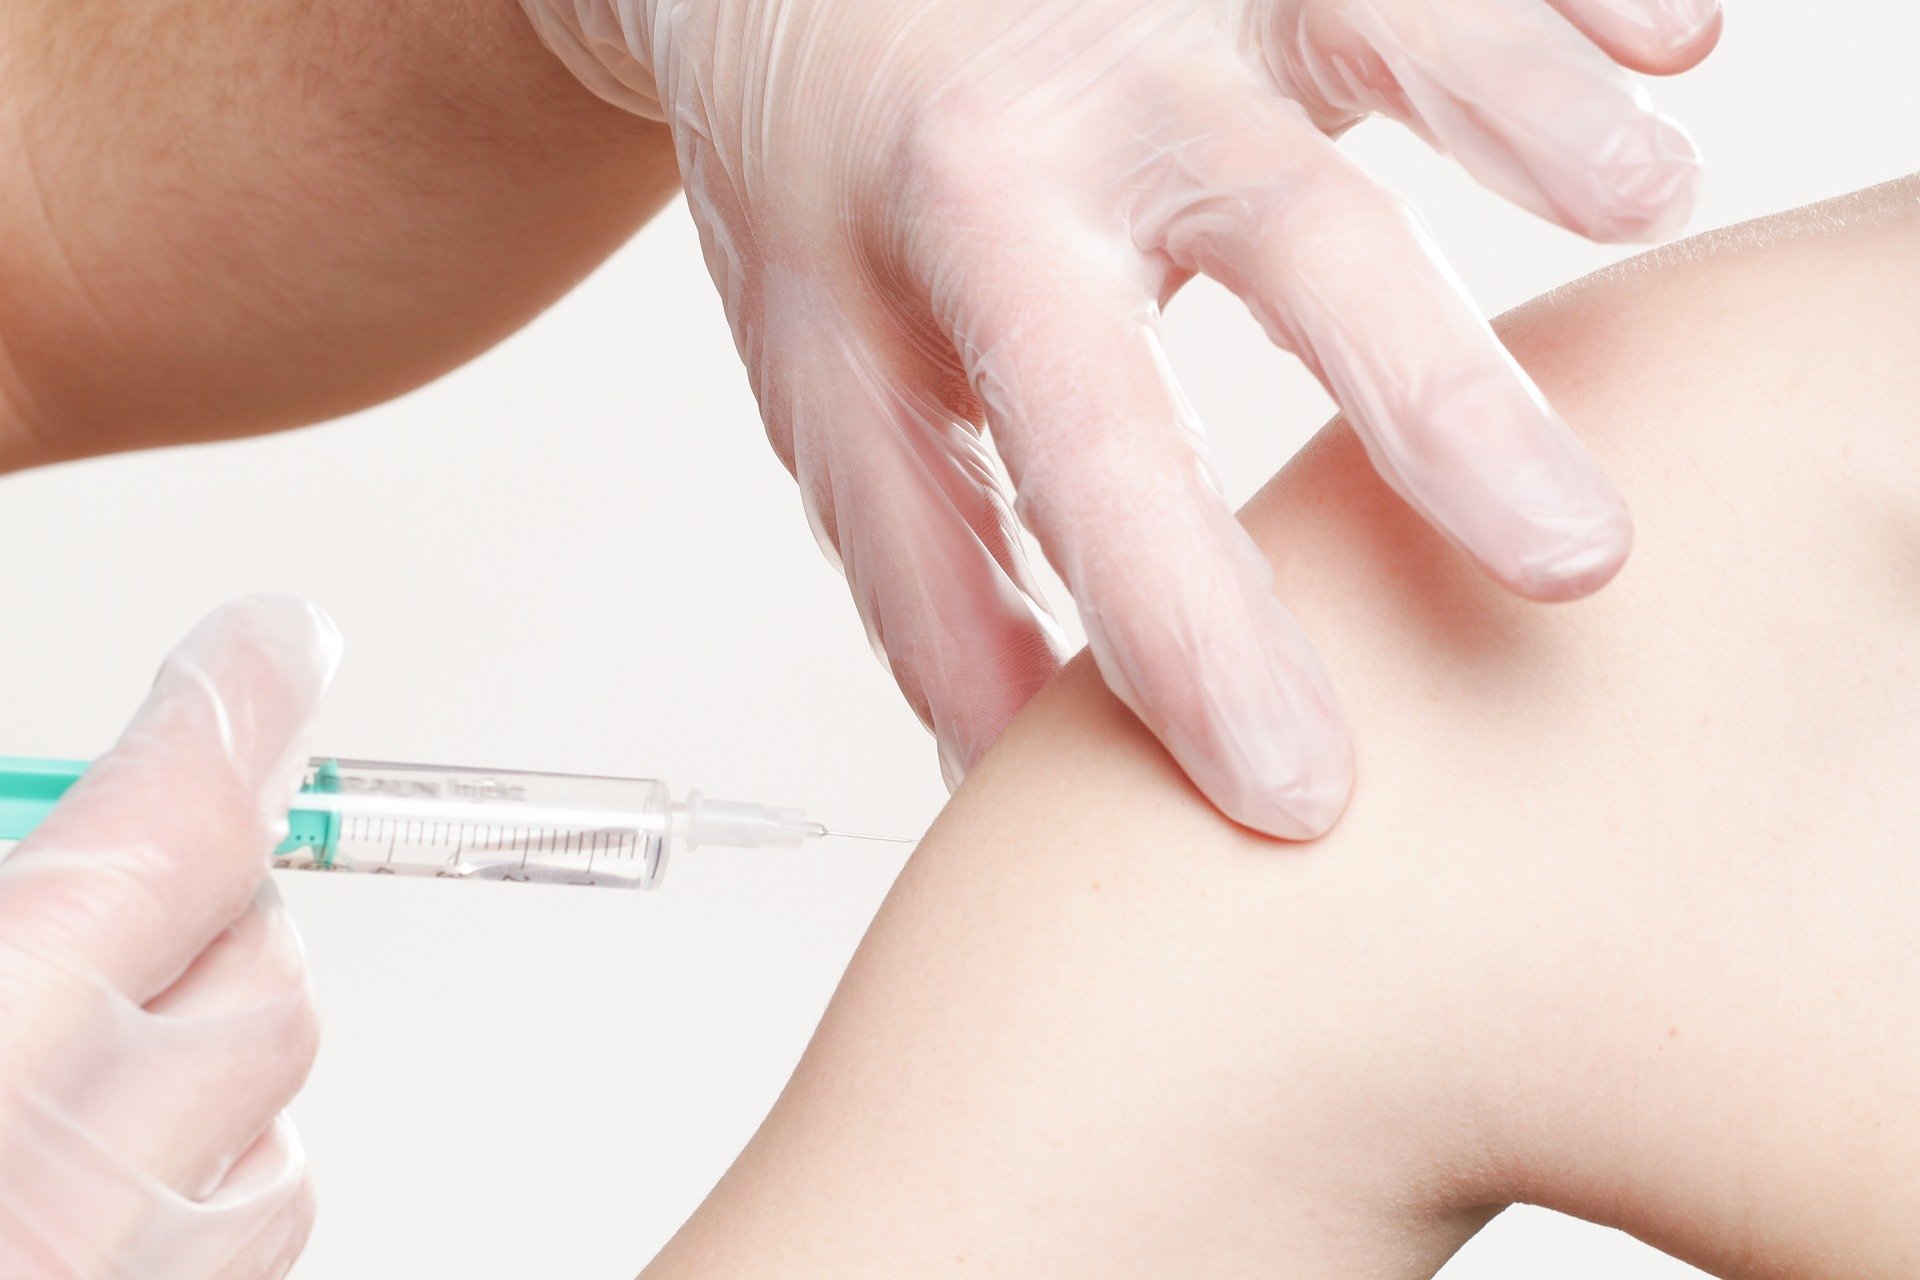 Vaccins contre le COVID-19 : où en est la recherche clinique au 13 novembre 2020 ?